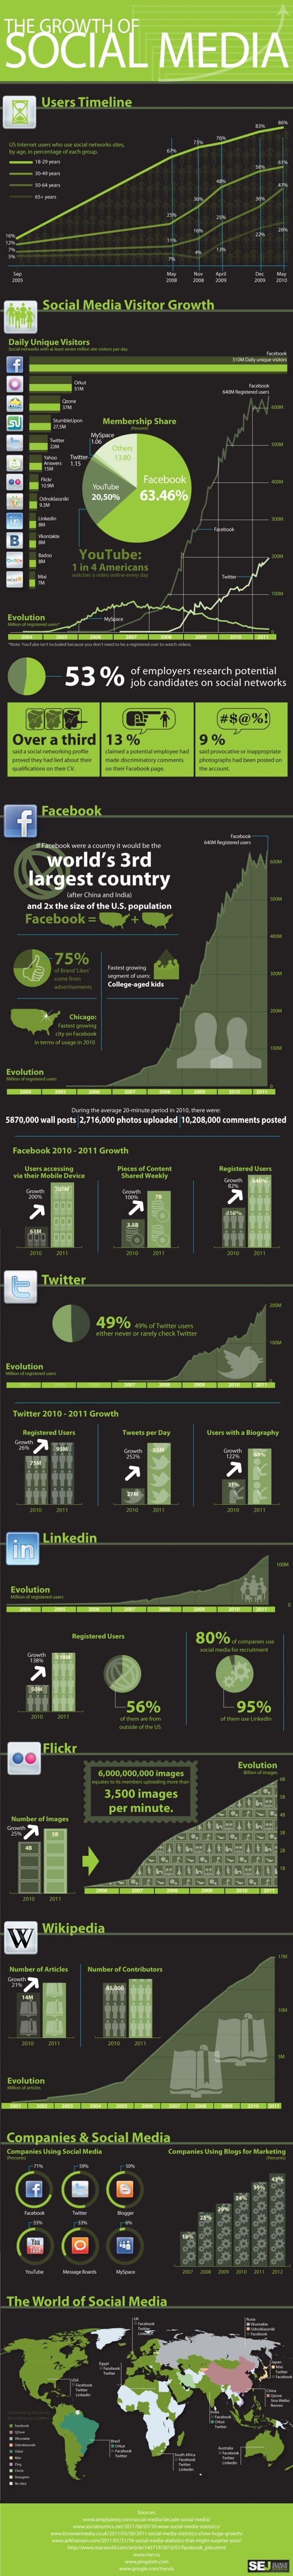 L'évolution des réseaux sociaux en 1 image